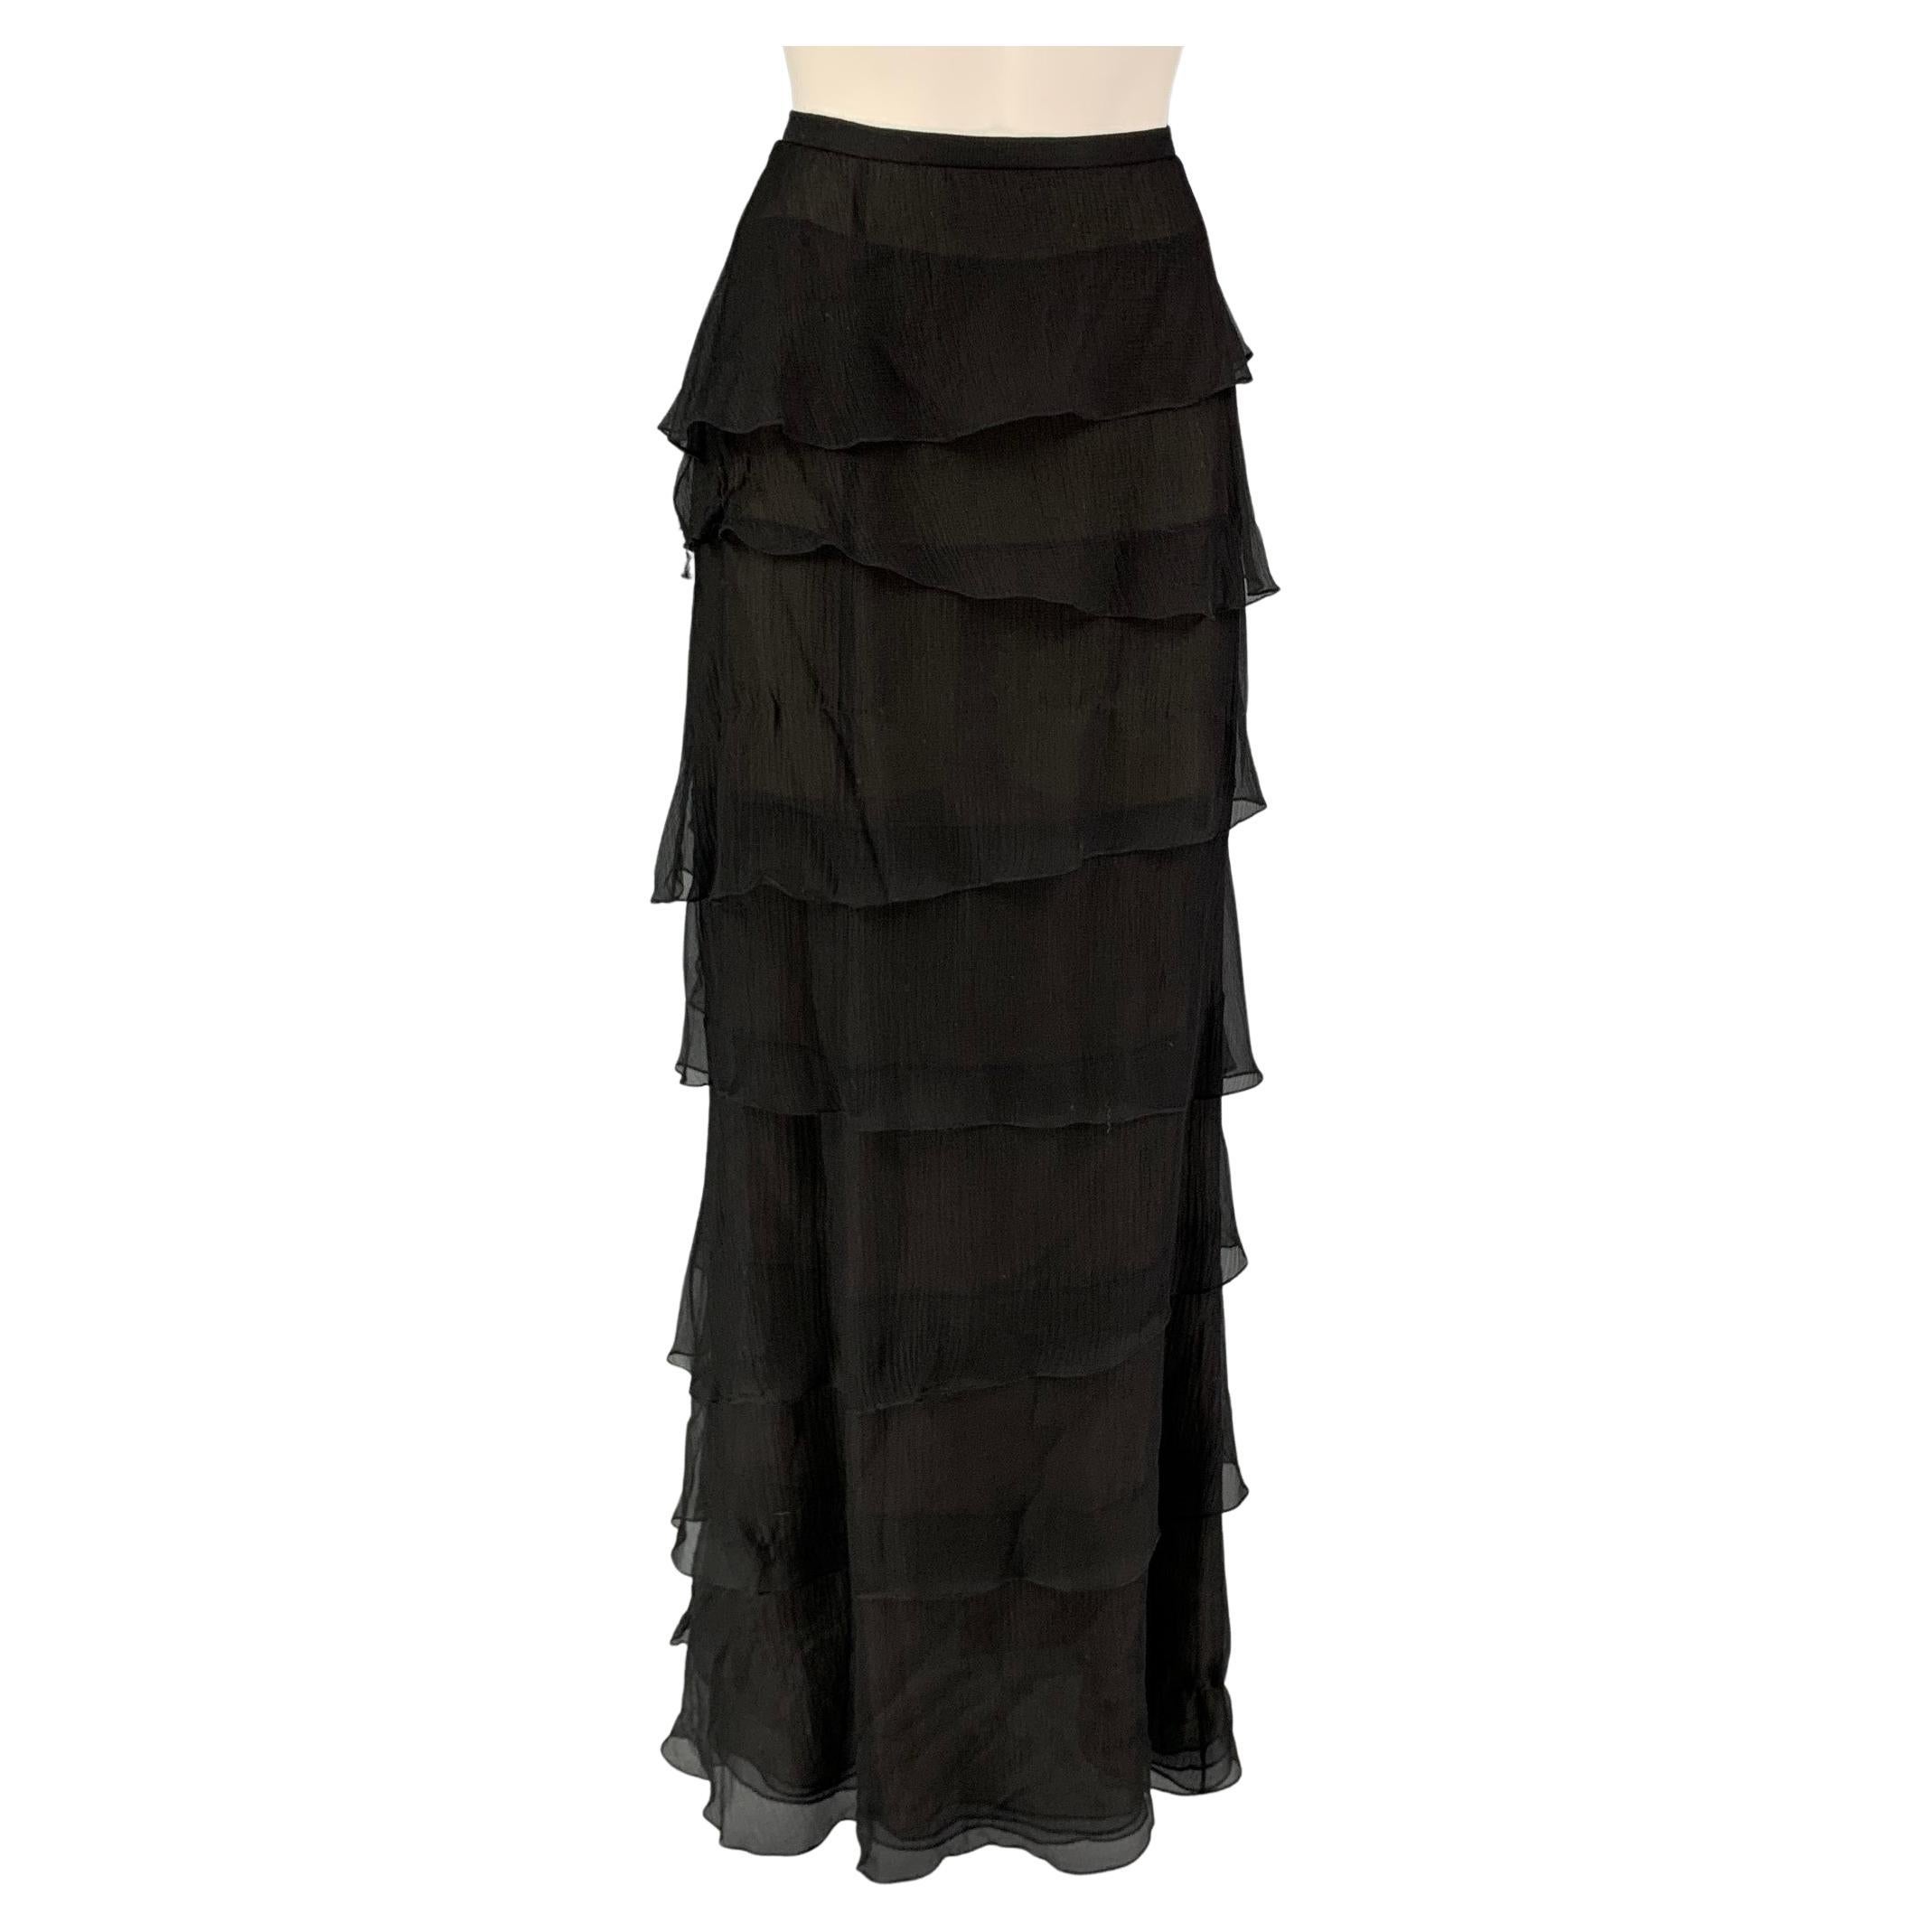 Louis Vuitton Mixed Stripes Tiered Mini Skirt BLACK. Size 34